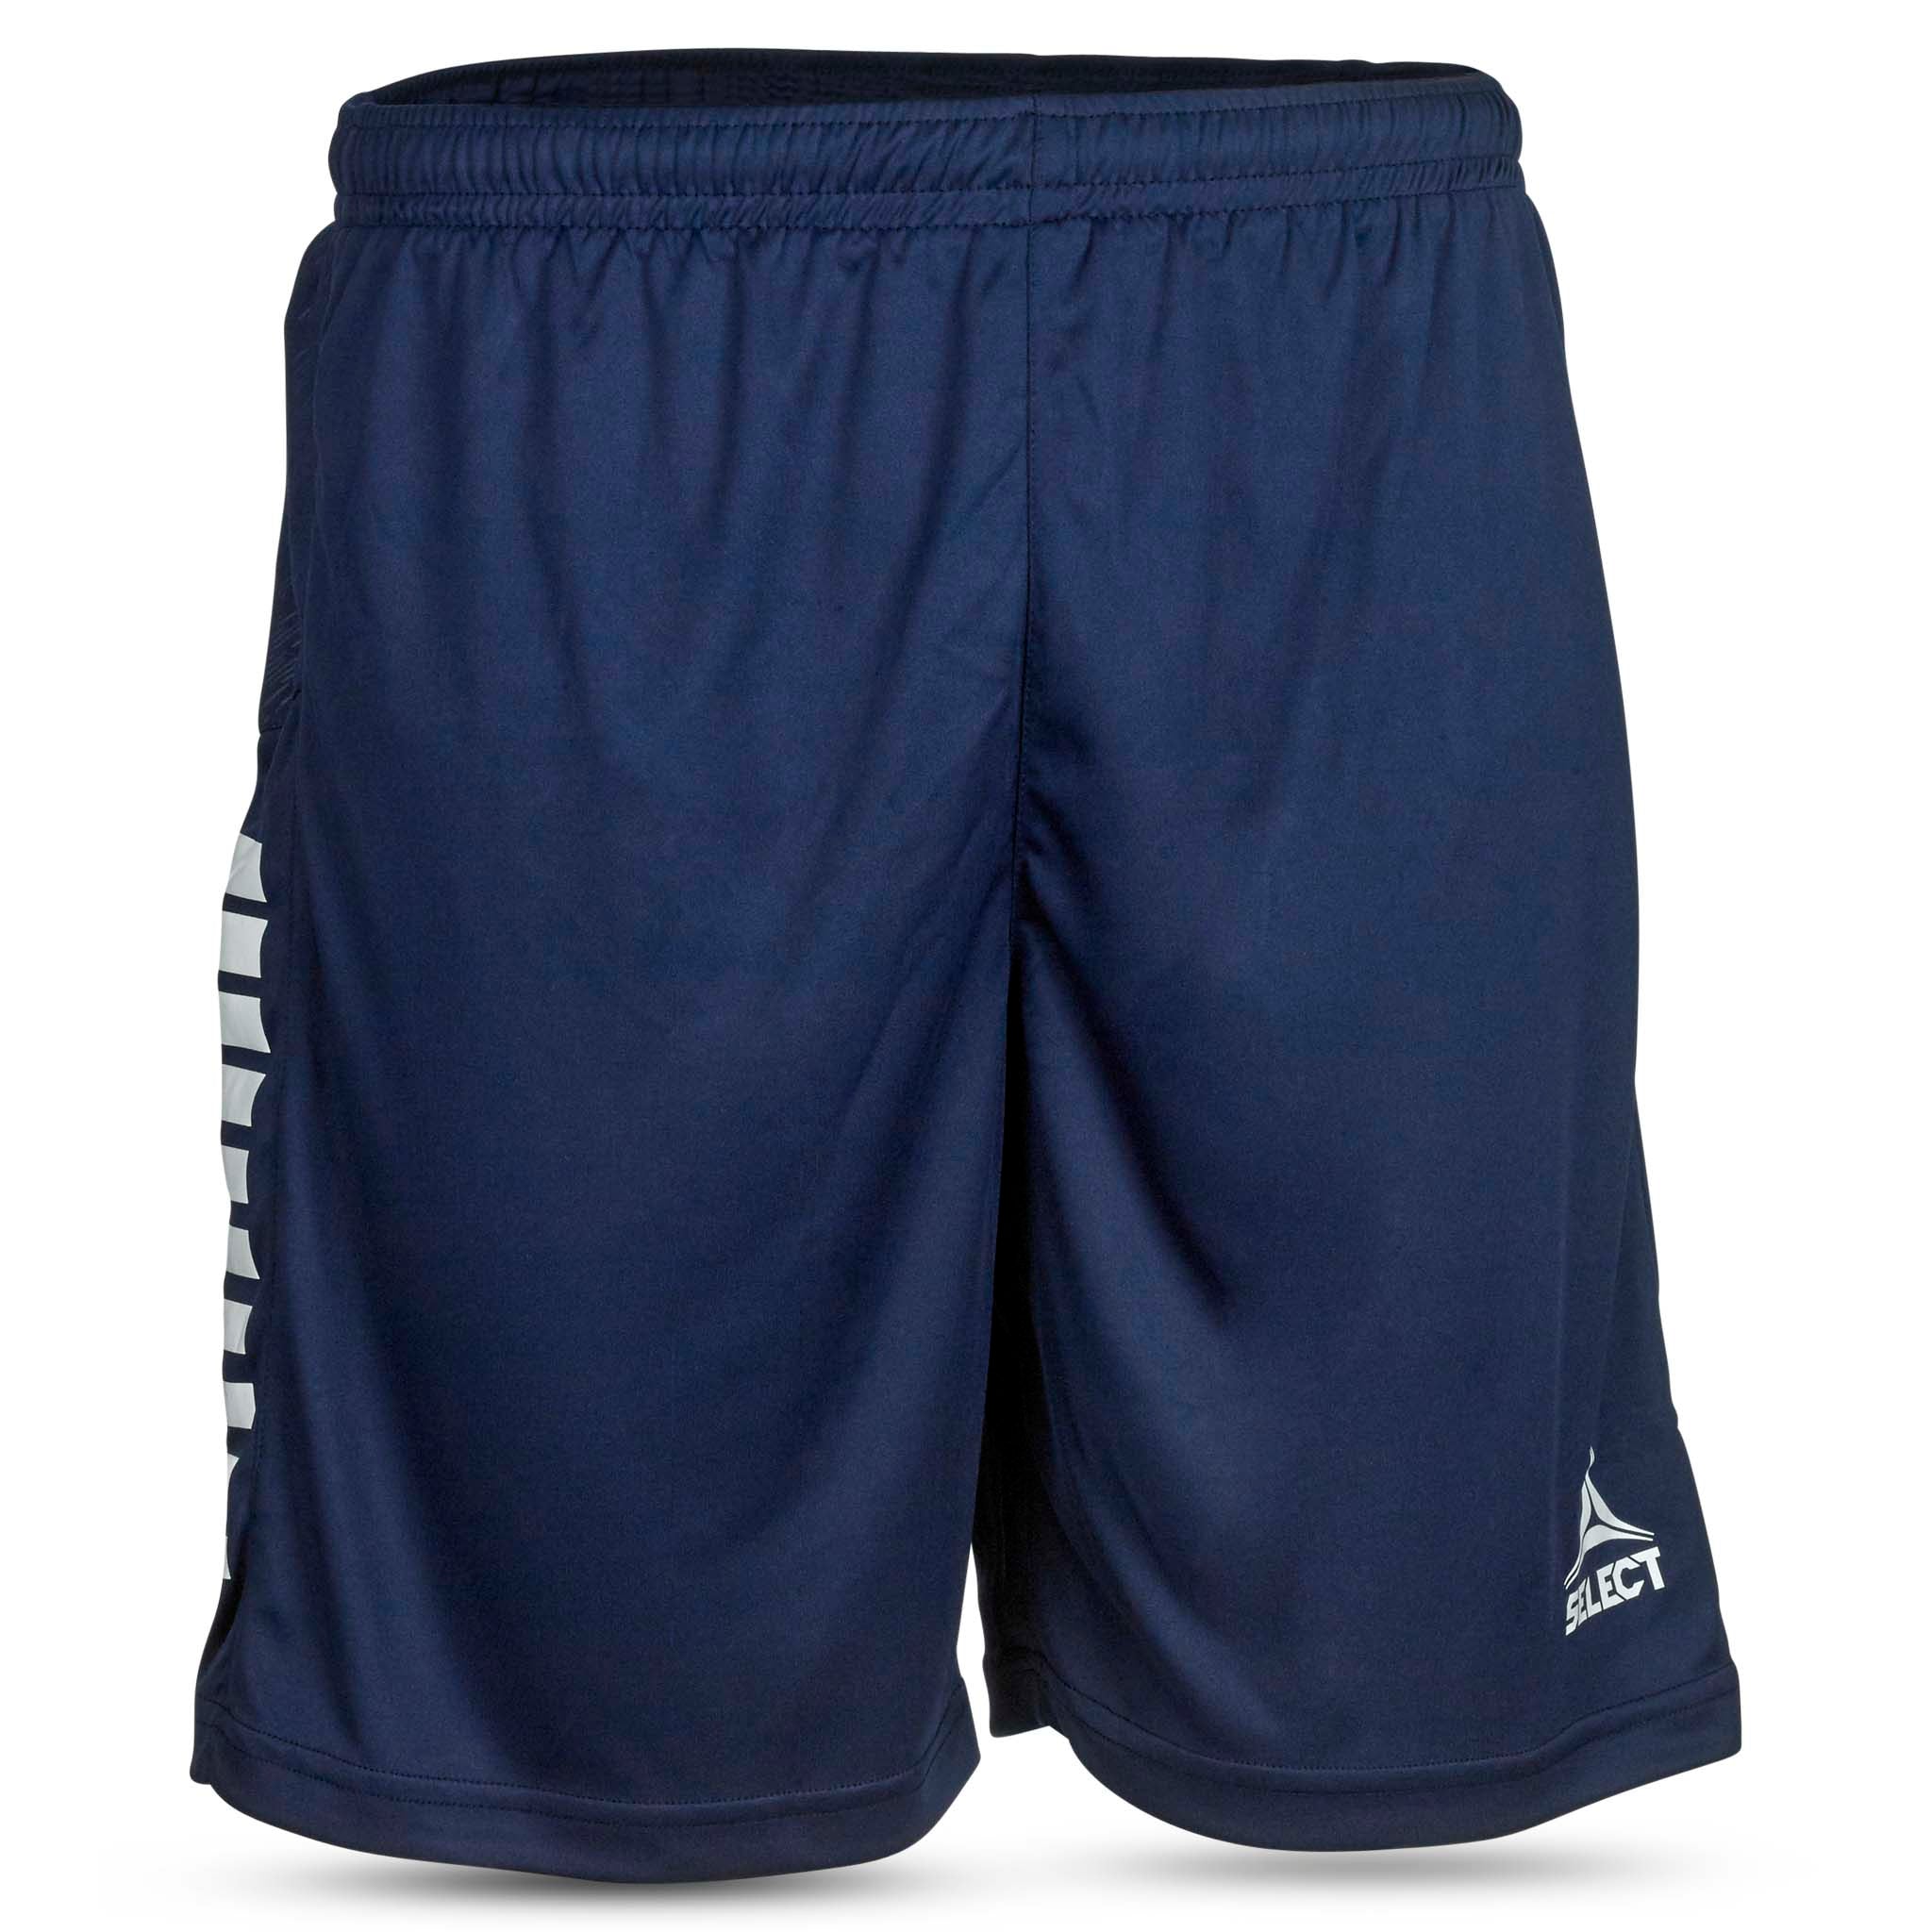 Spain Shorts - Barn #färg_navy